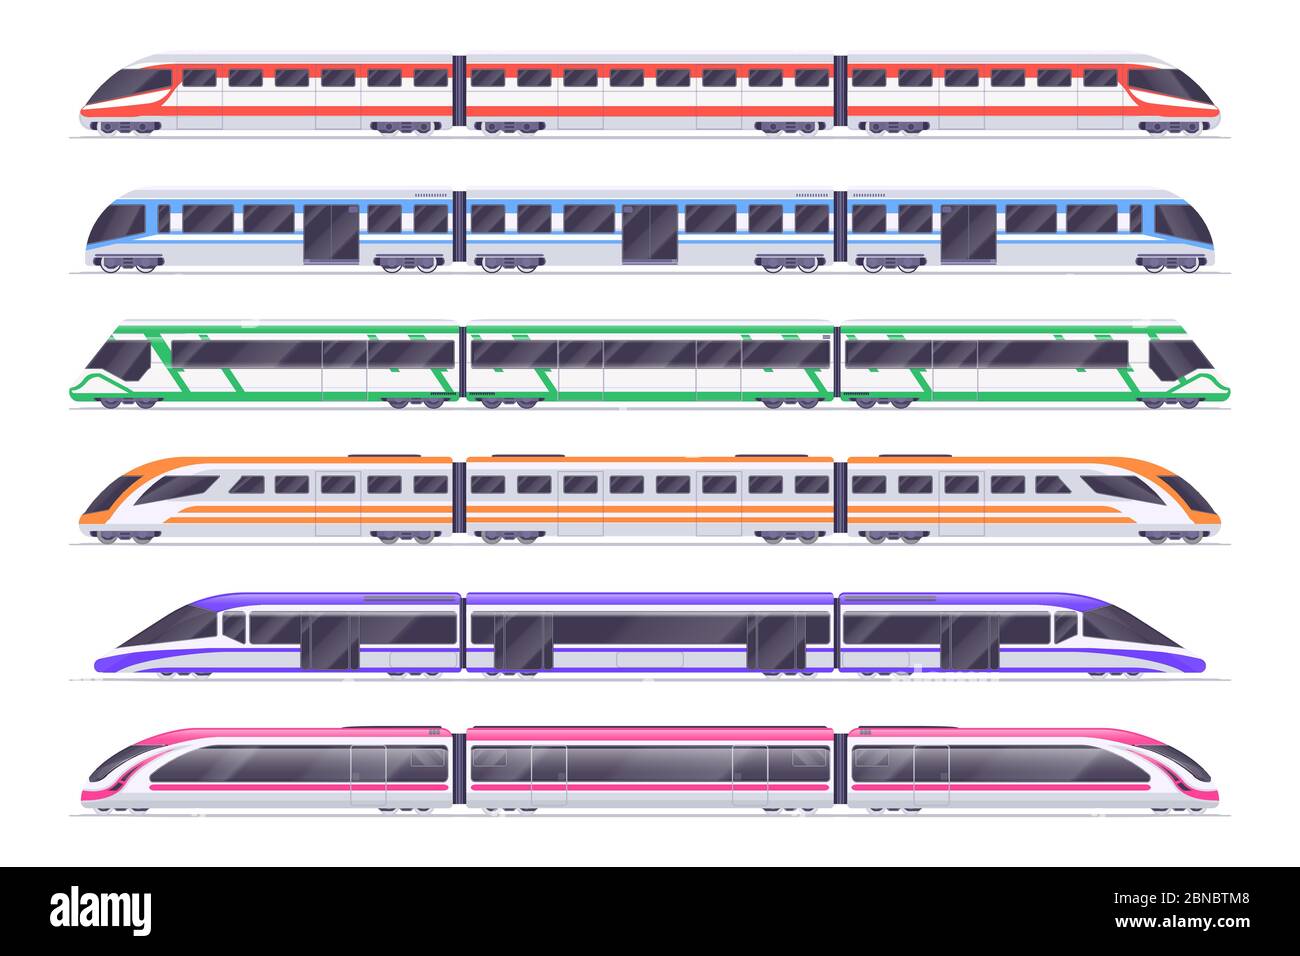 Trenes de pasajeros. Metro moderno y tren. Sistema de vectores de transporte urbano. Tren y ferrocarril, ilustración de transporte de pasajeros Ilustración del Vector